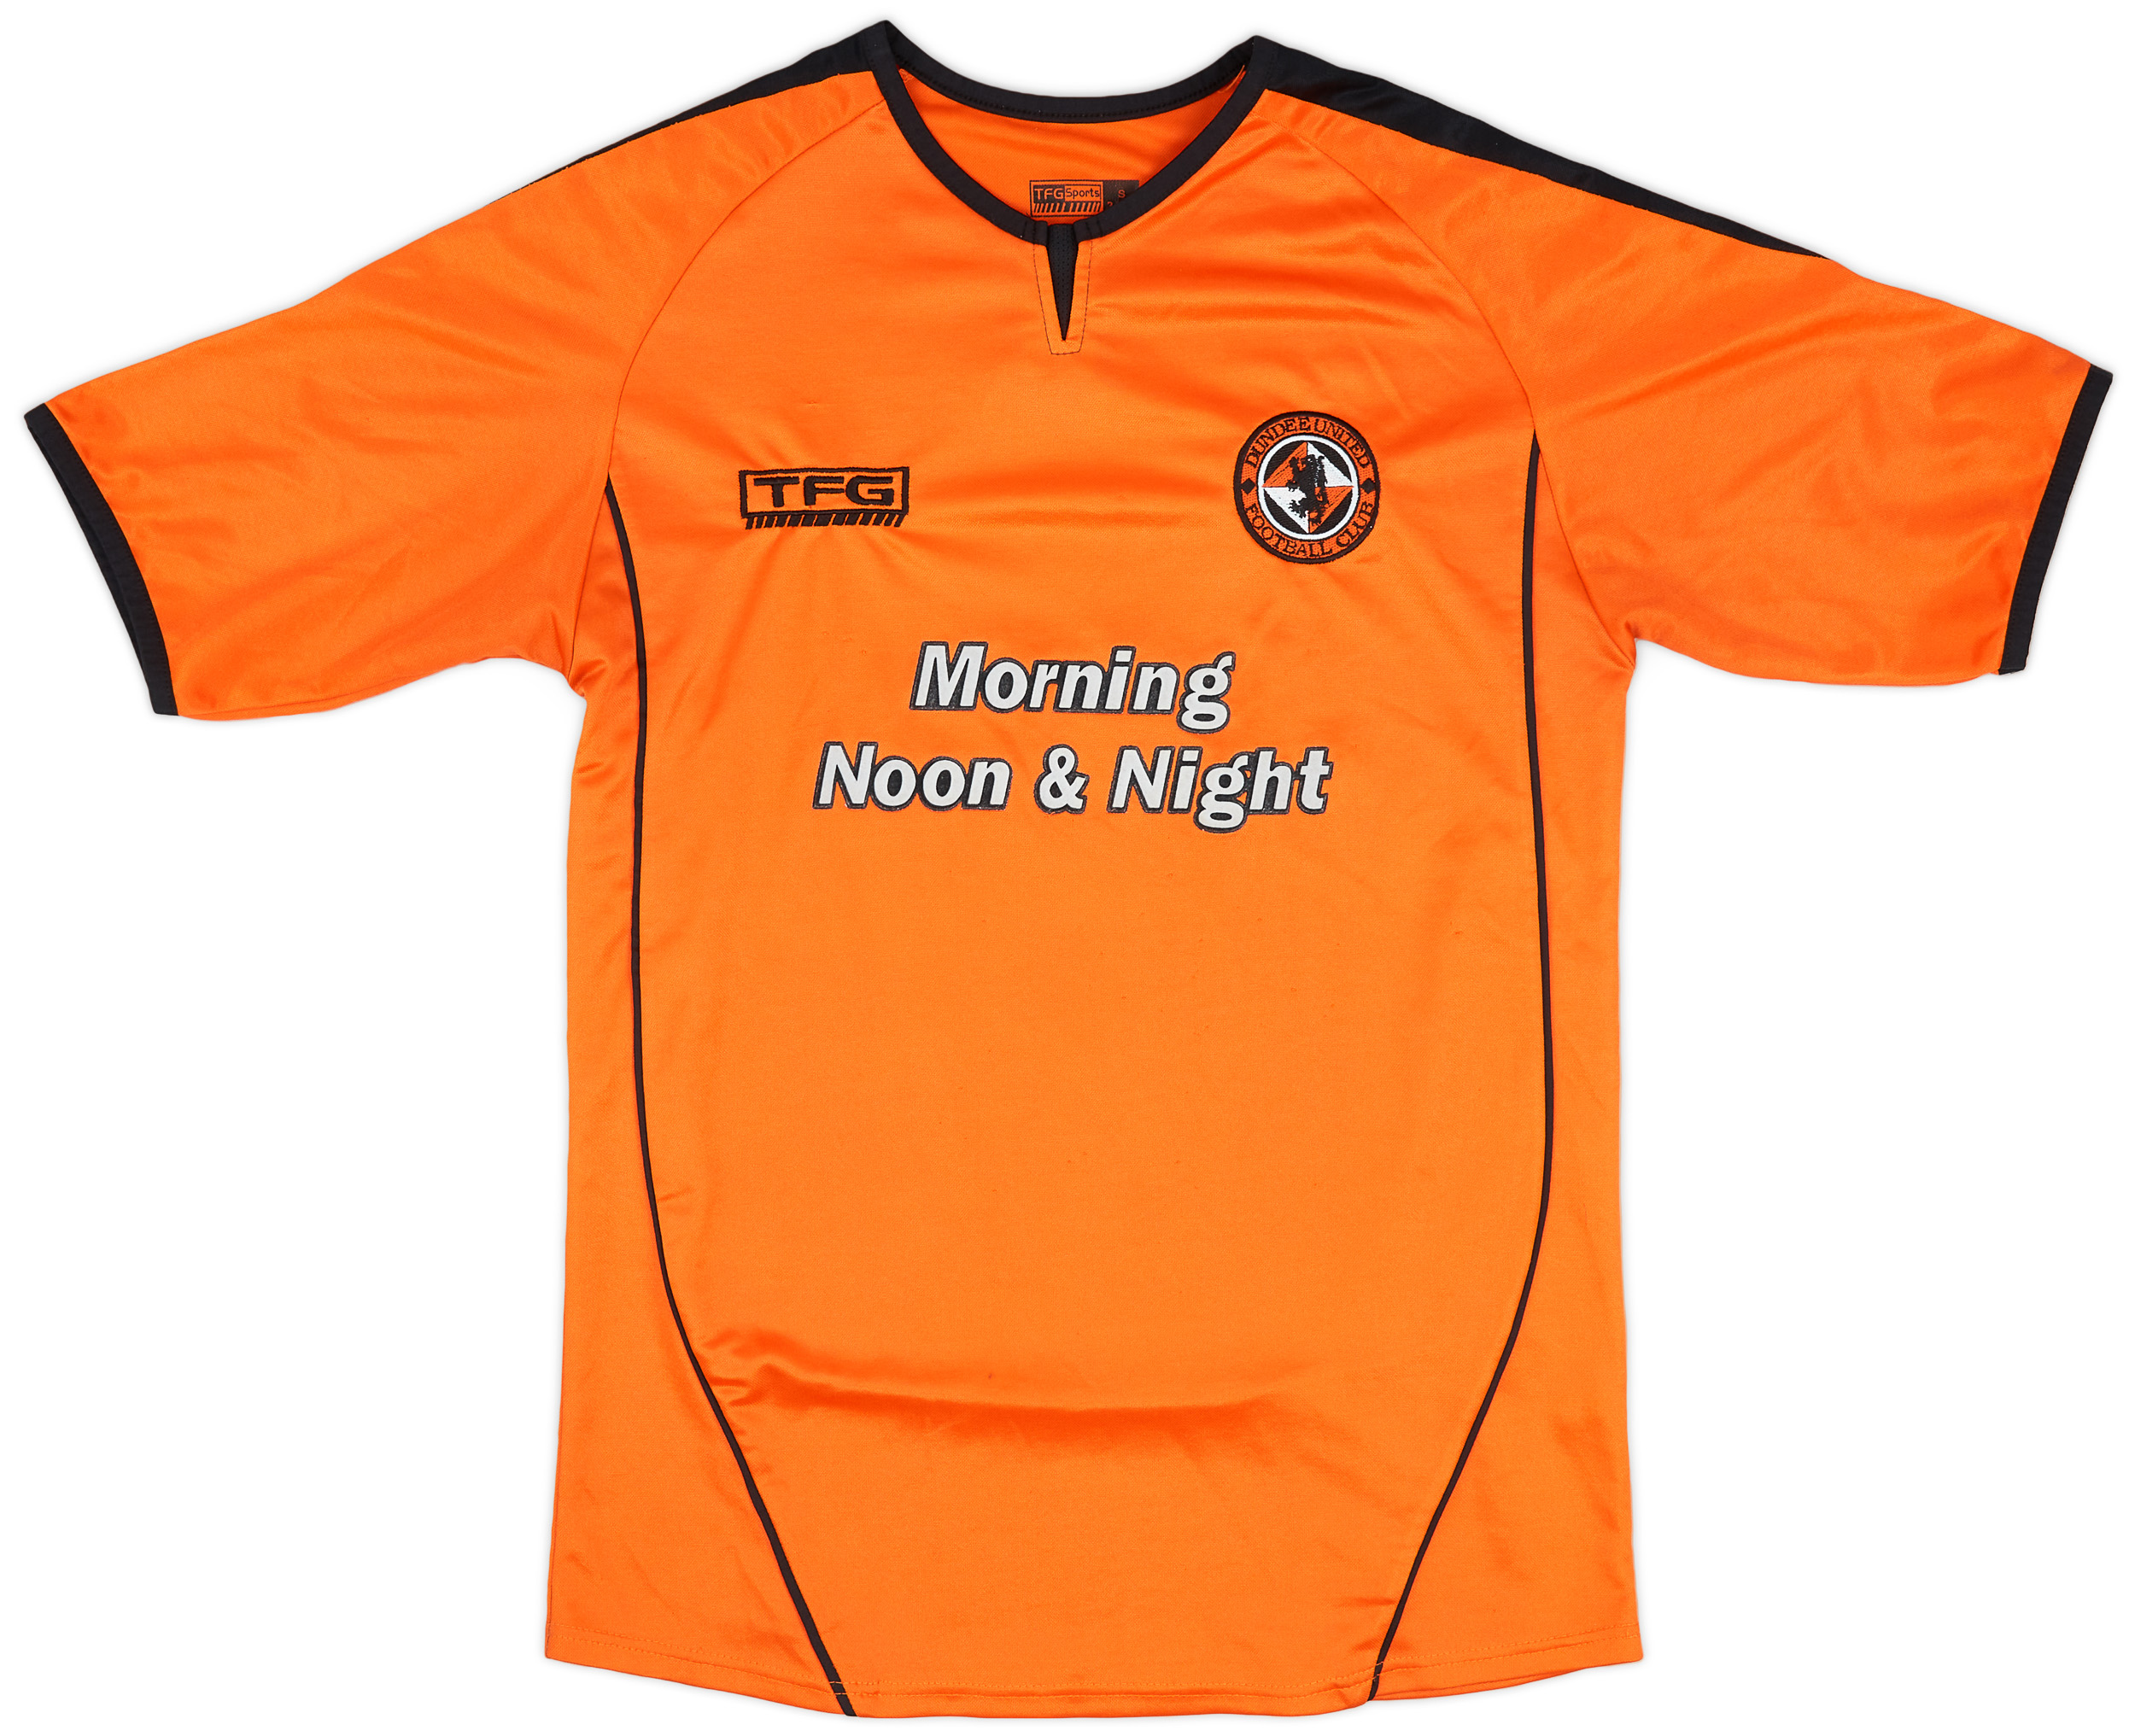 Retro Dundee United Shirt